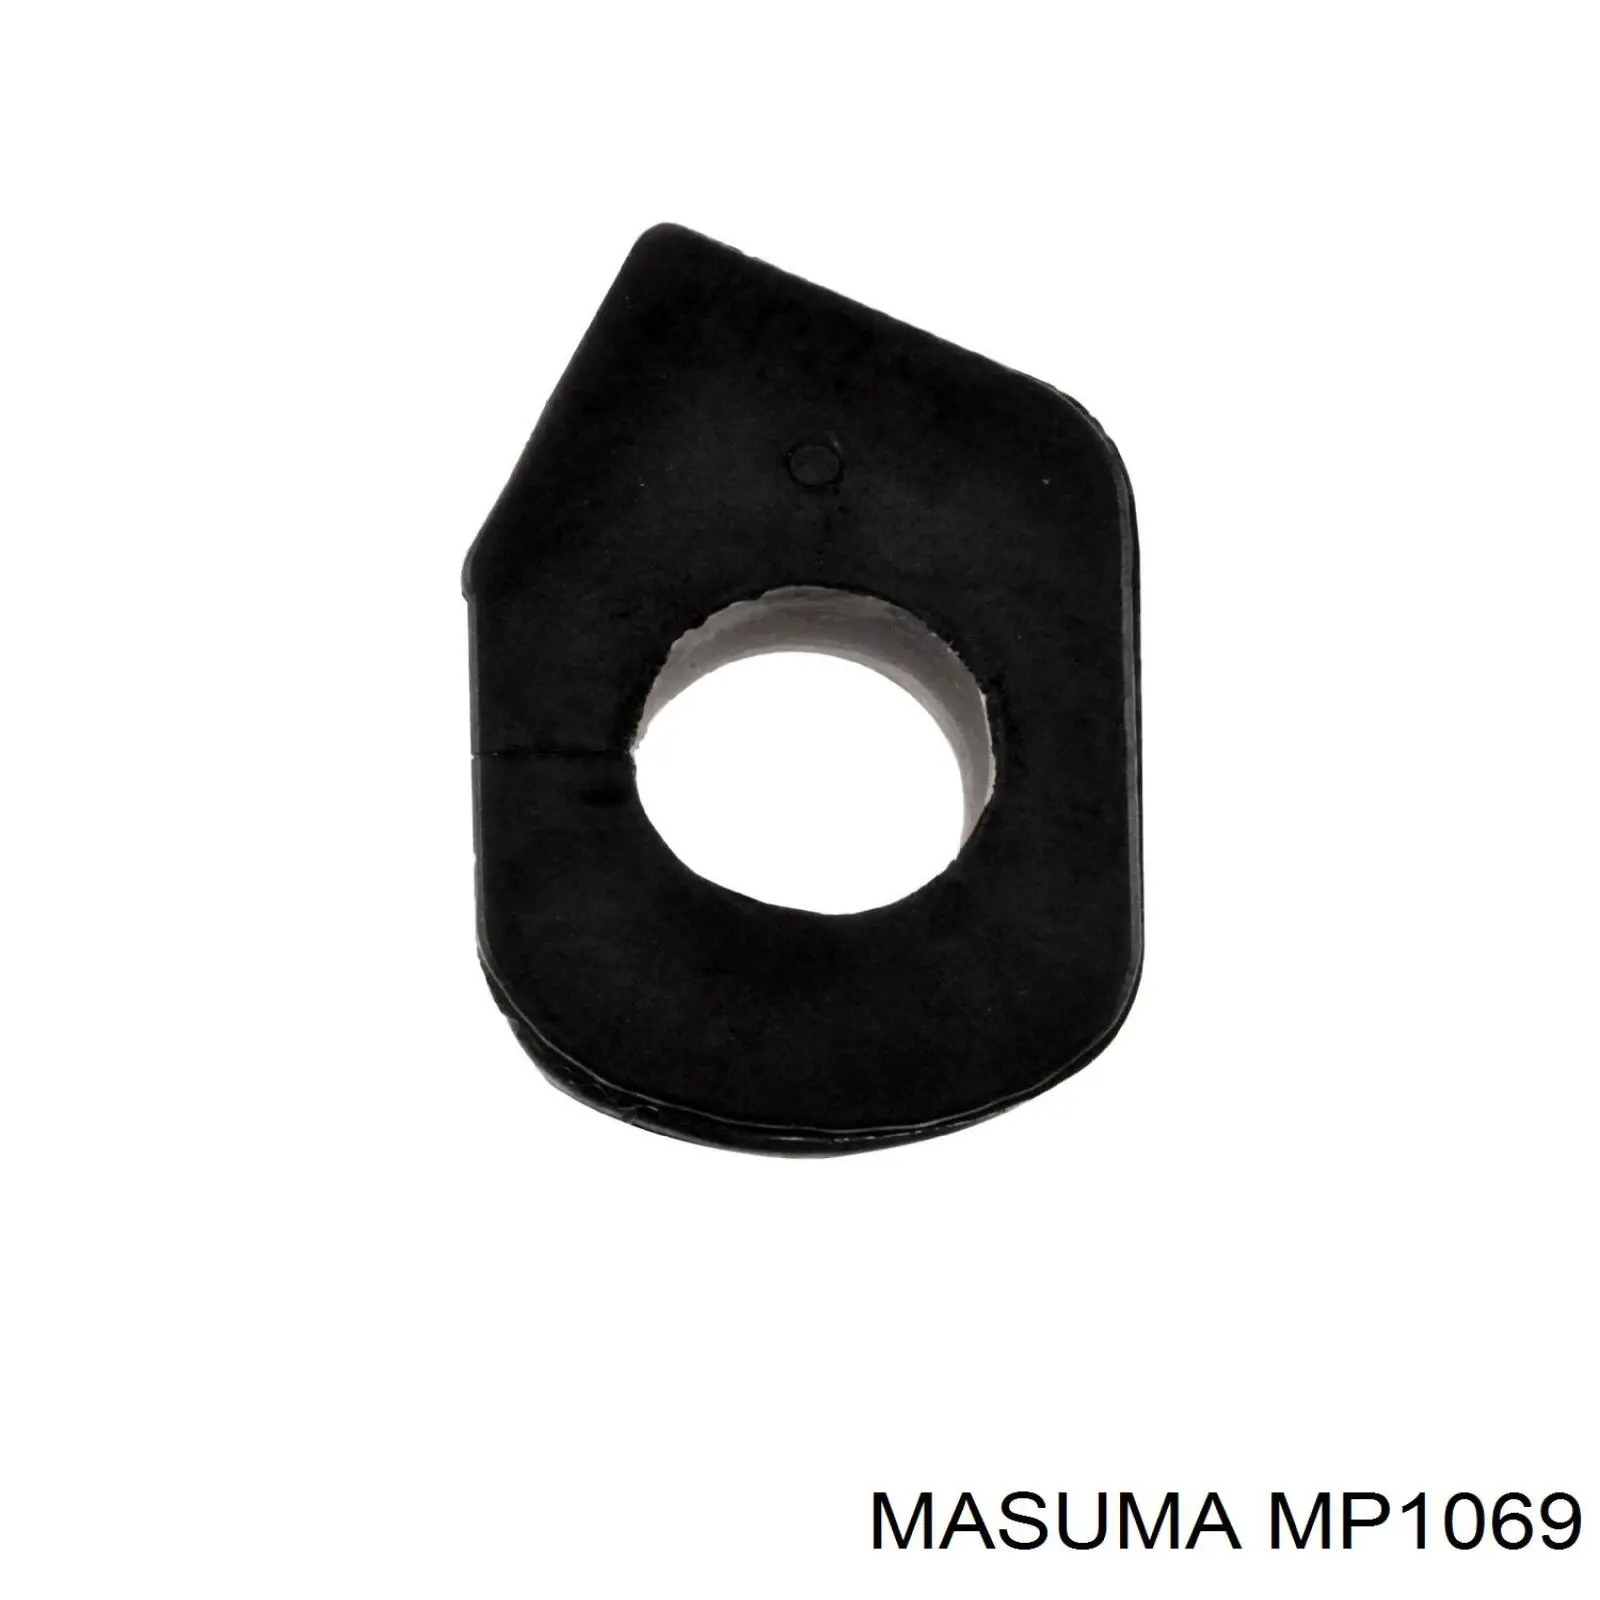 MP1069 Masuma casquillo de barra estabilizadora delantera